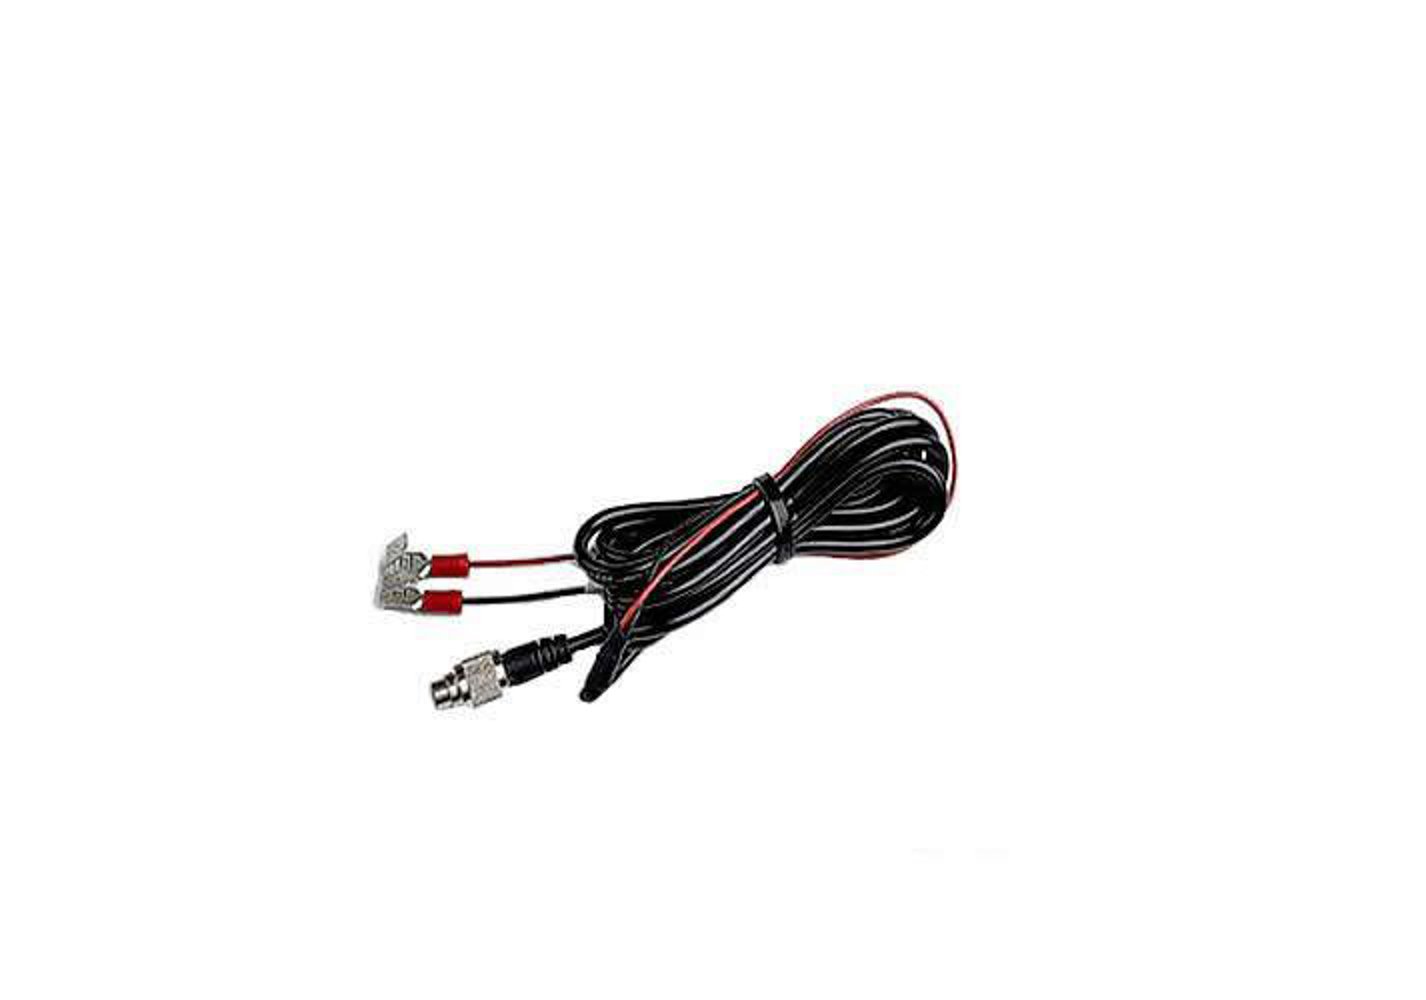 AIM Sports V02557020 External Power Cable, Black Rubber Coated, AiM MyChron 5, Each